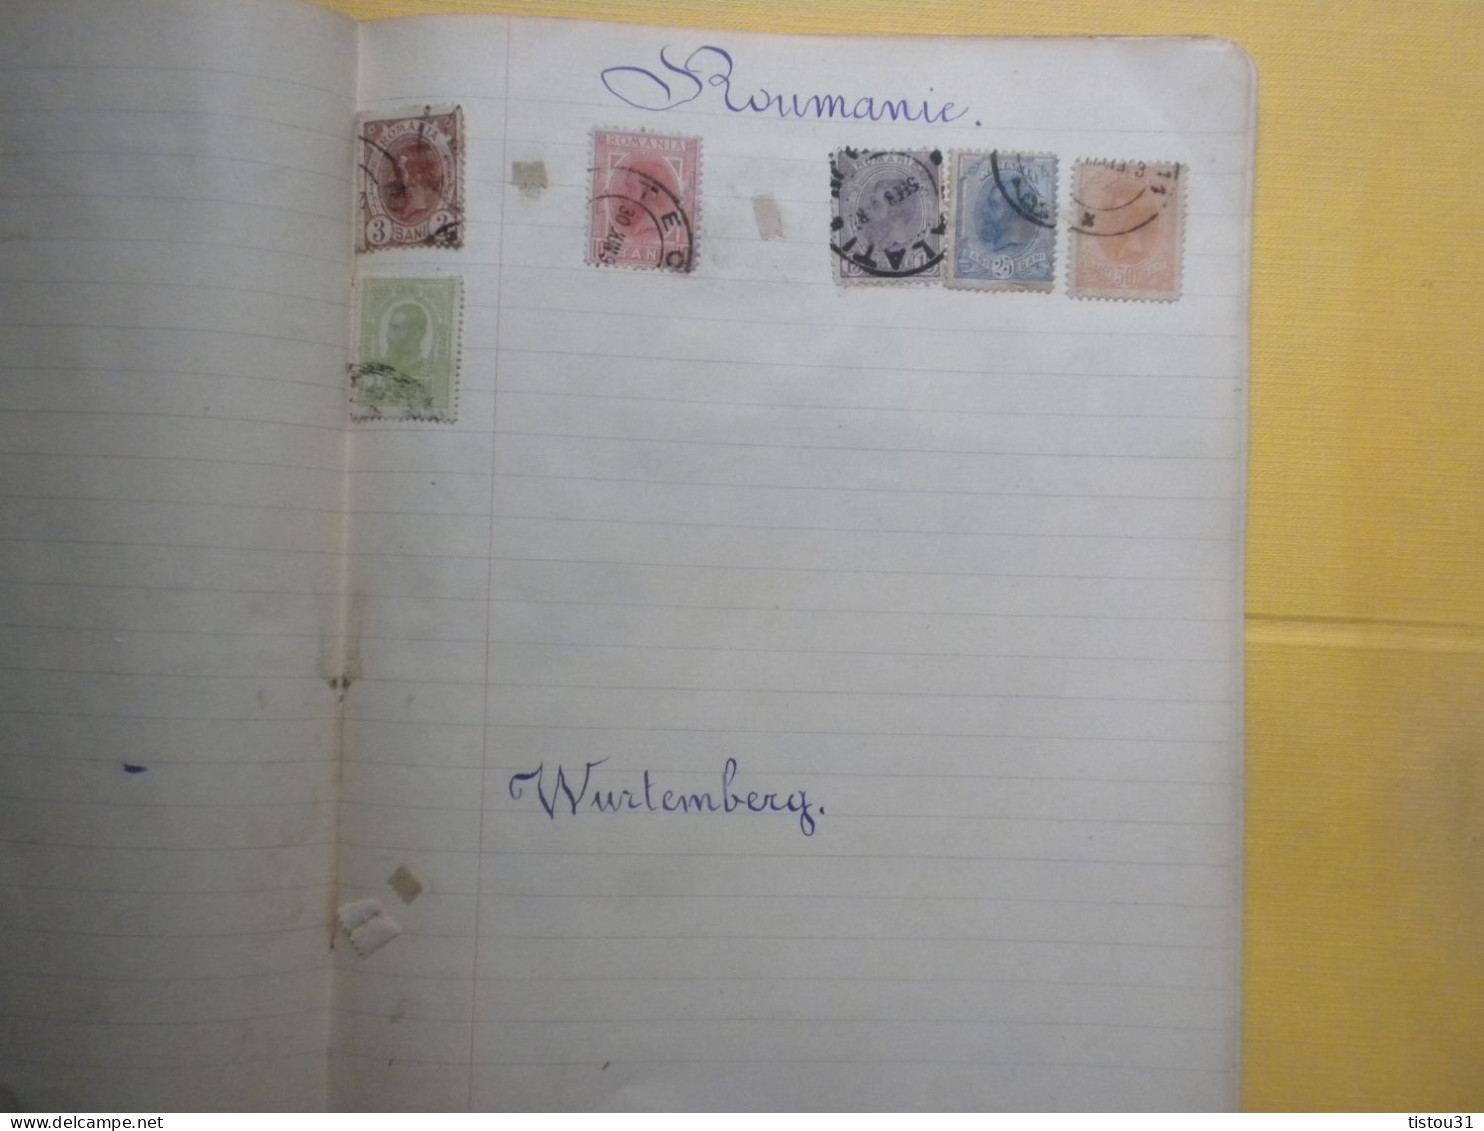 Ancienne collection enfantine d'environ 150  timbres des années 1930